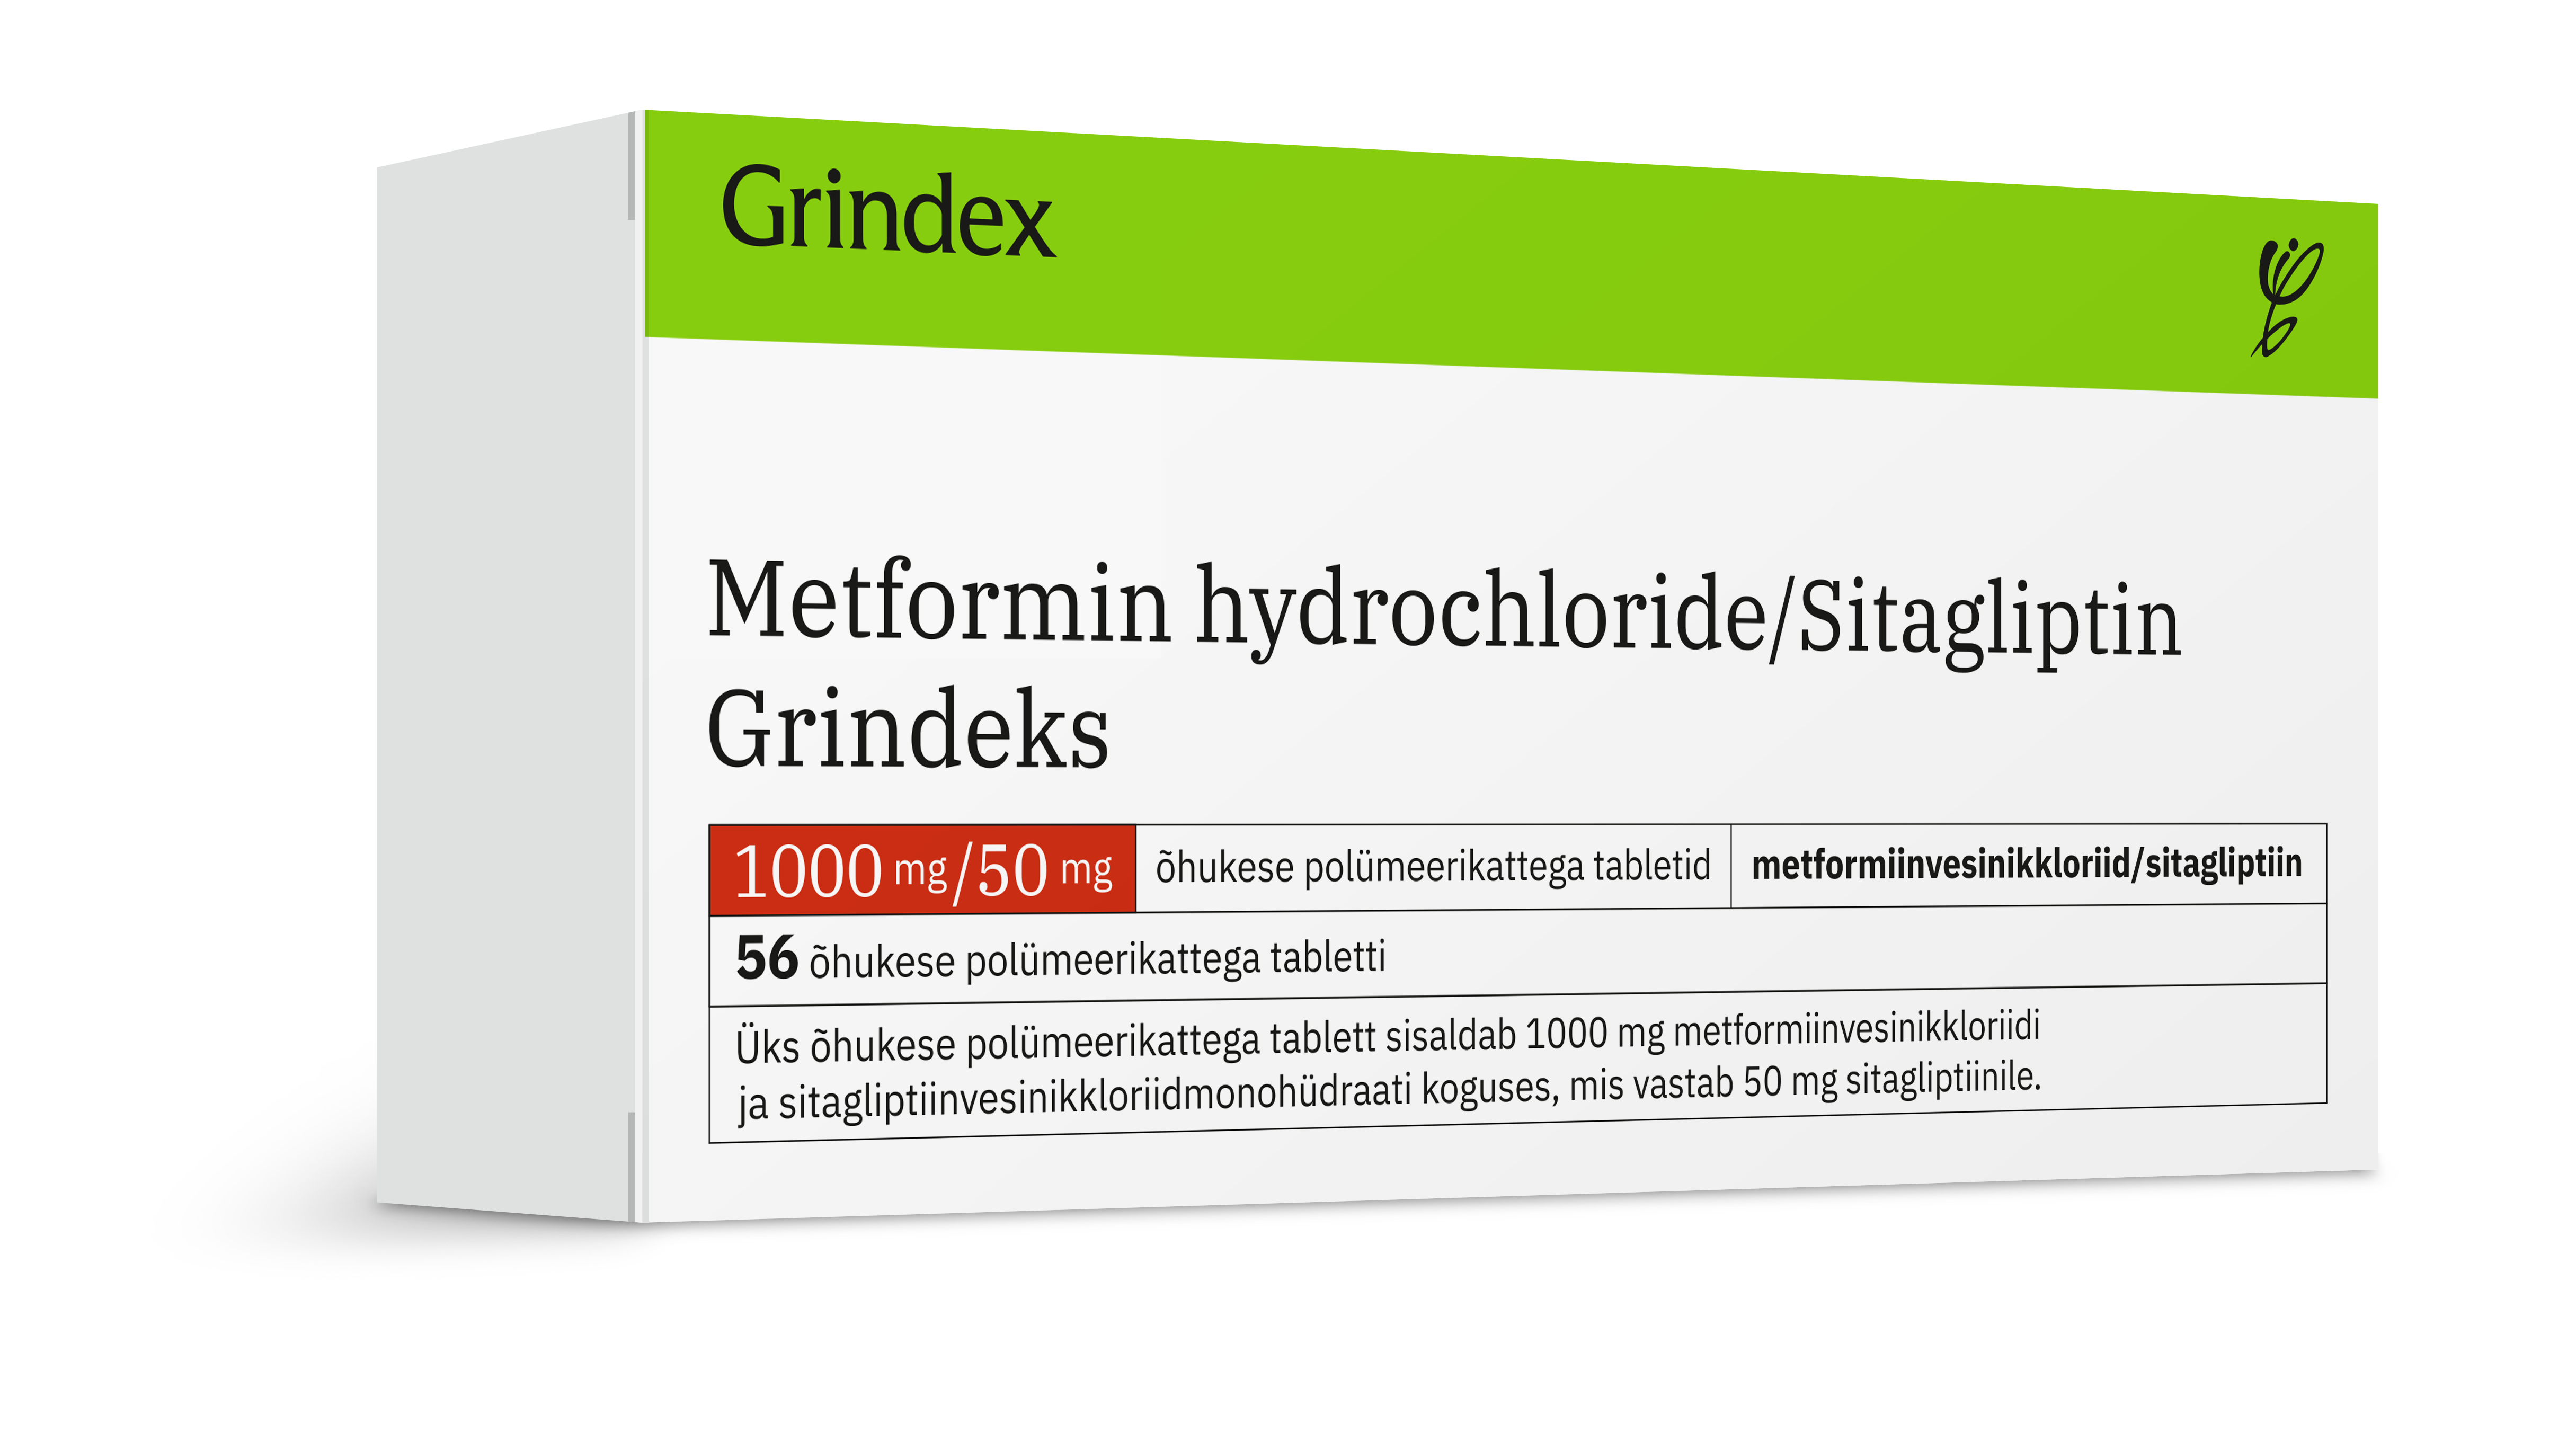 მეტფორმინის ჰიდროქლორიდი/სიტაგლიპტინ გრინდექსი / Metformin Hydrochloride/Sitagliptin Grindeks